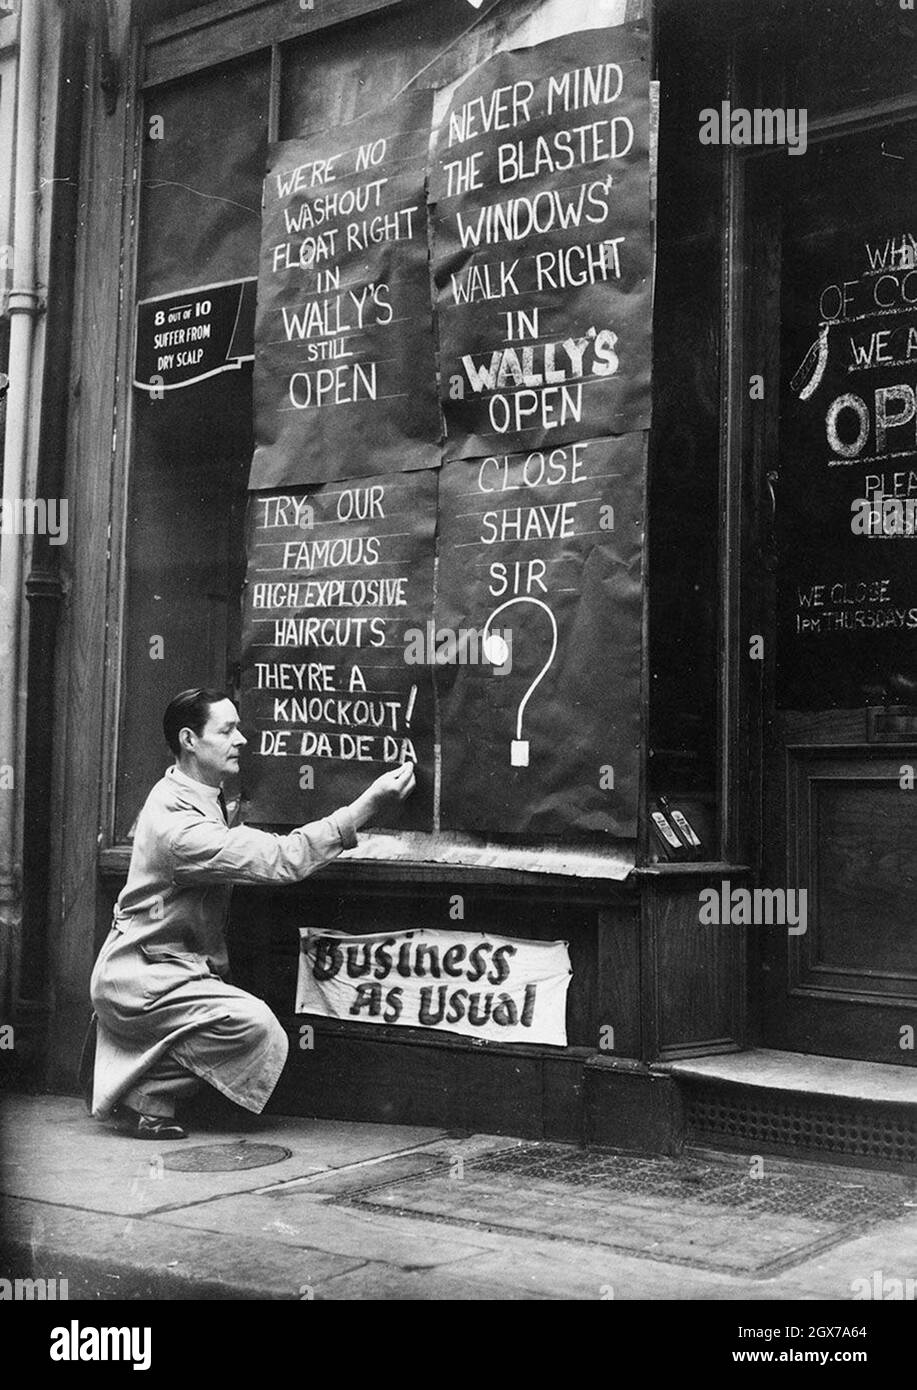 Ein Geschäftsinhaber, der während des London Blitz humorvolle Botschaften in seinem Geschäft schreibt, um Business as Usual zu vermitteln. Stockfoto